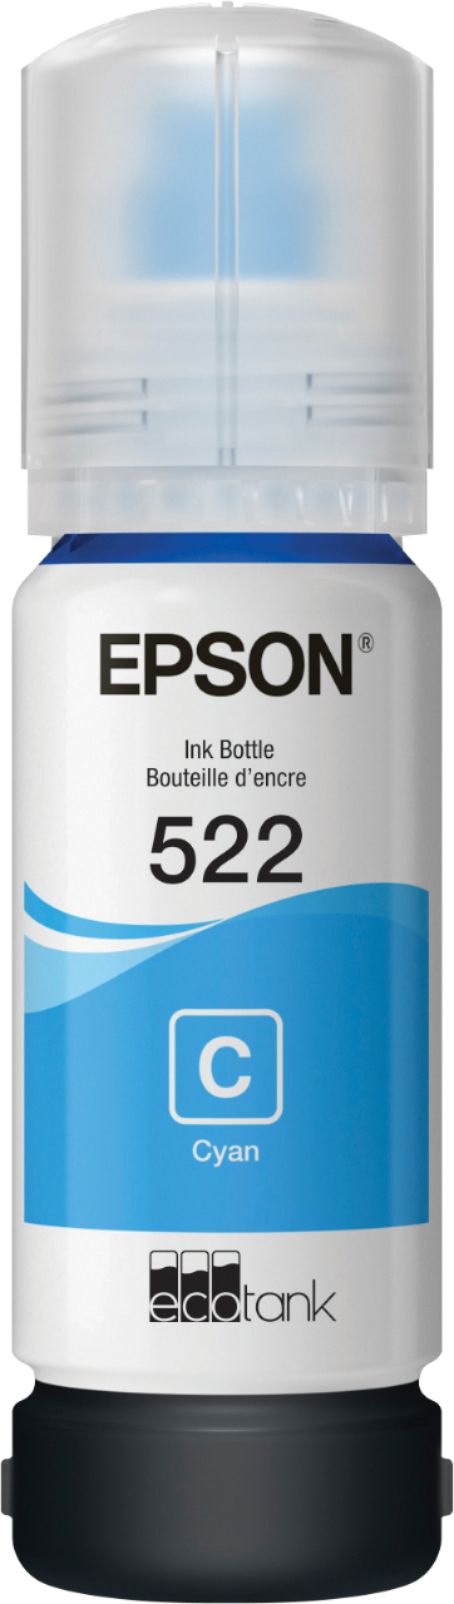 Customer Reviews Epson Ecotank 522 Ink Bottle Cyan Epson Cyan Ink Bottle T522220 Best Buy 6236